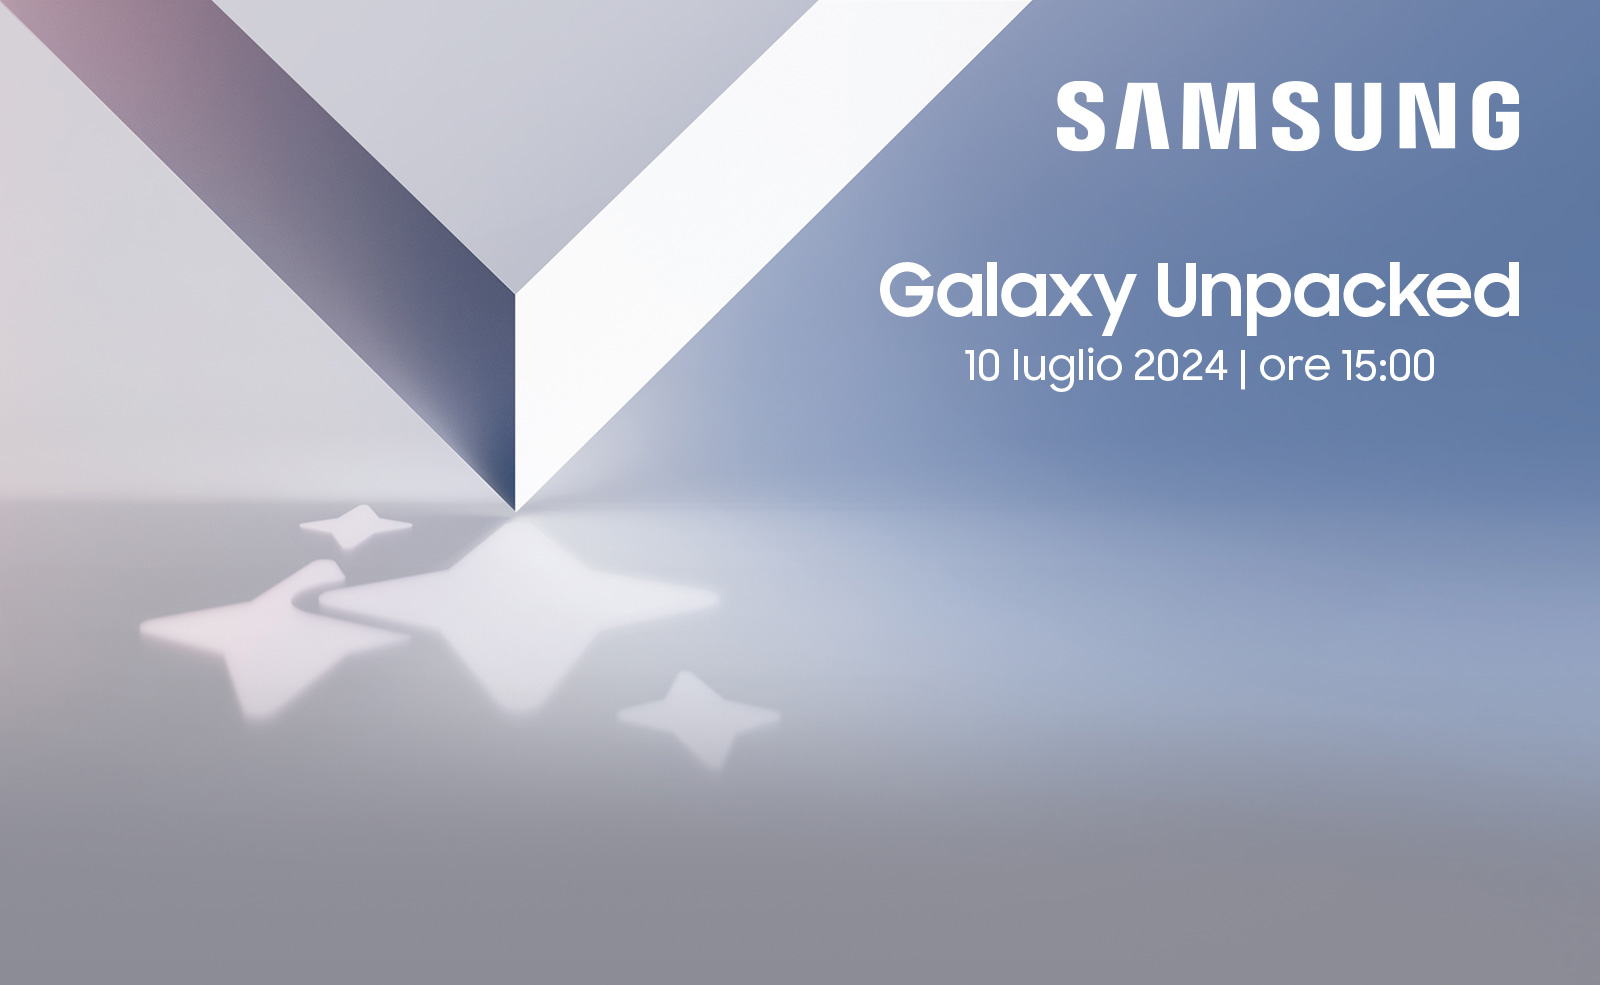 Samsung - Galaxy Unpacked - 10 luglio 2024 | ore 15:00